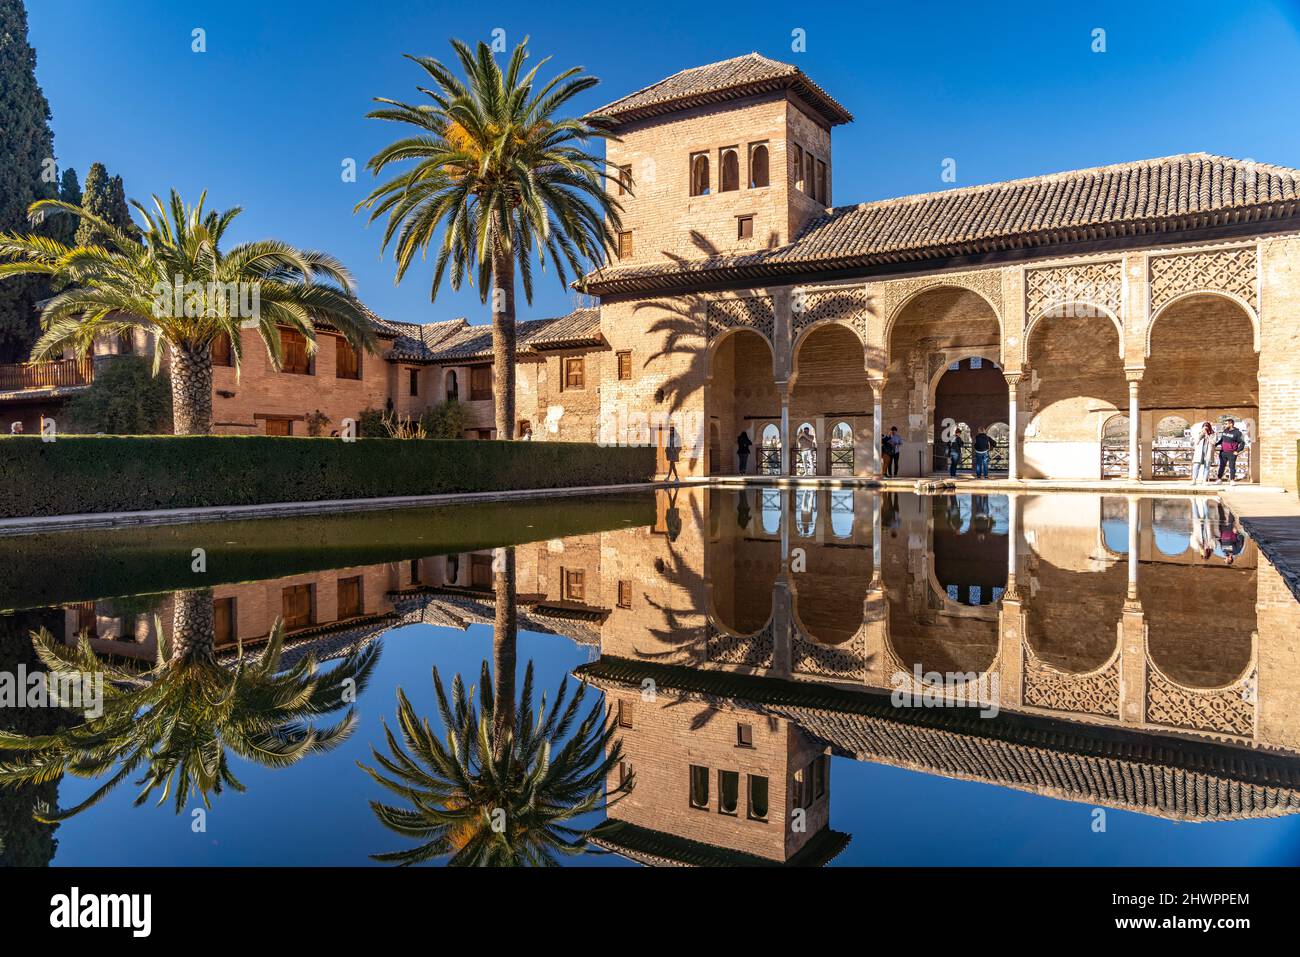 Der Partal Palast, Welterbe Alhambra a Granada, Andalusia, Spanien | il Palazzo Partal, patrimonio mondiale dell'Alhambra a Granada, Andalusia, Spagna Foto Stock